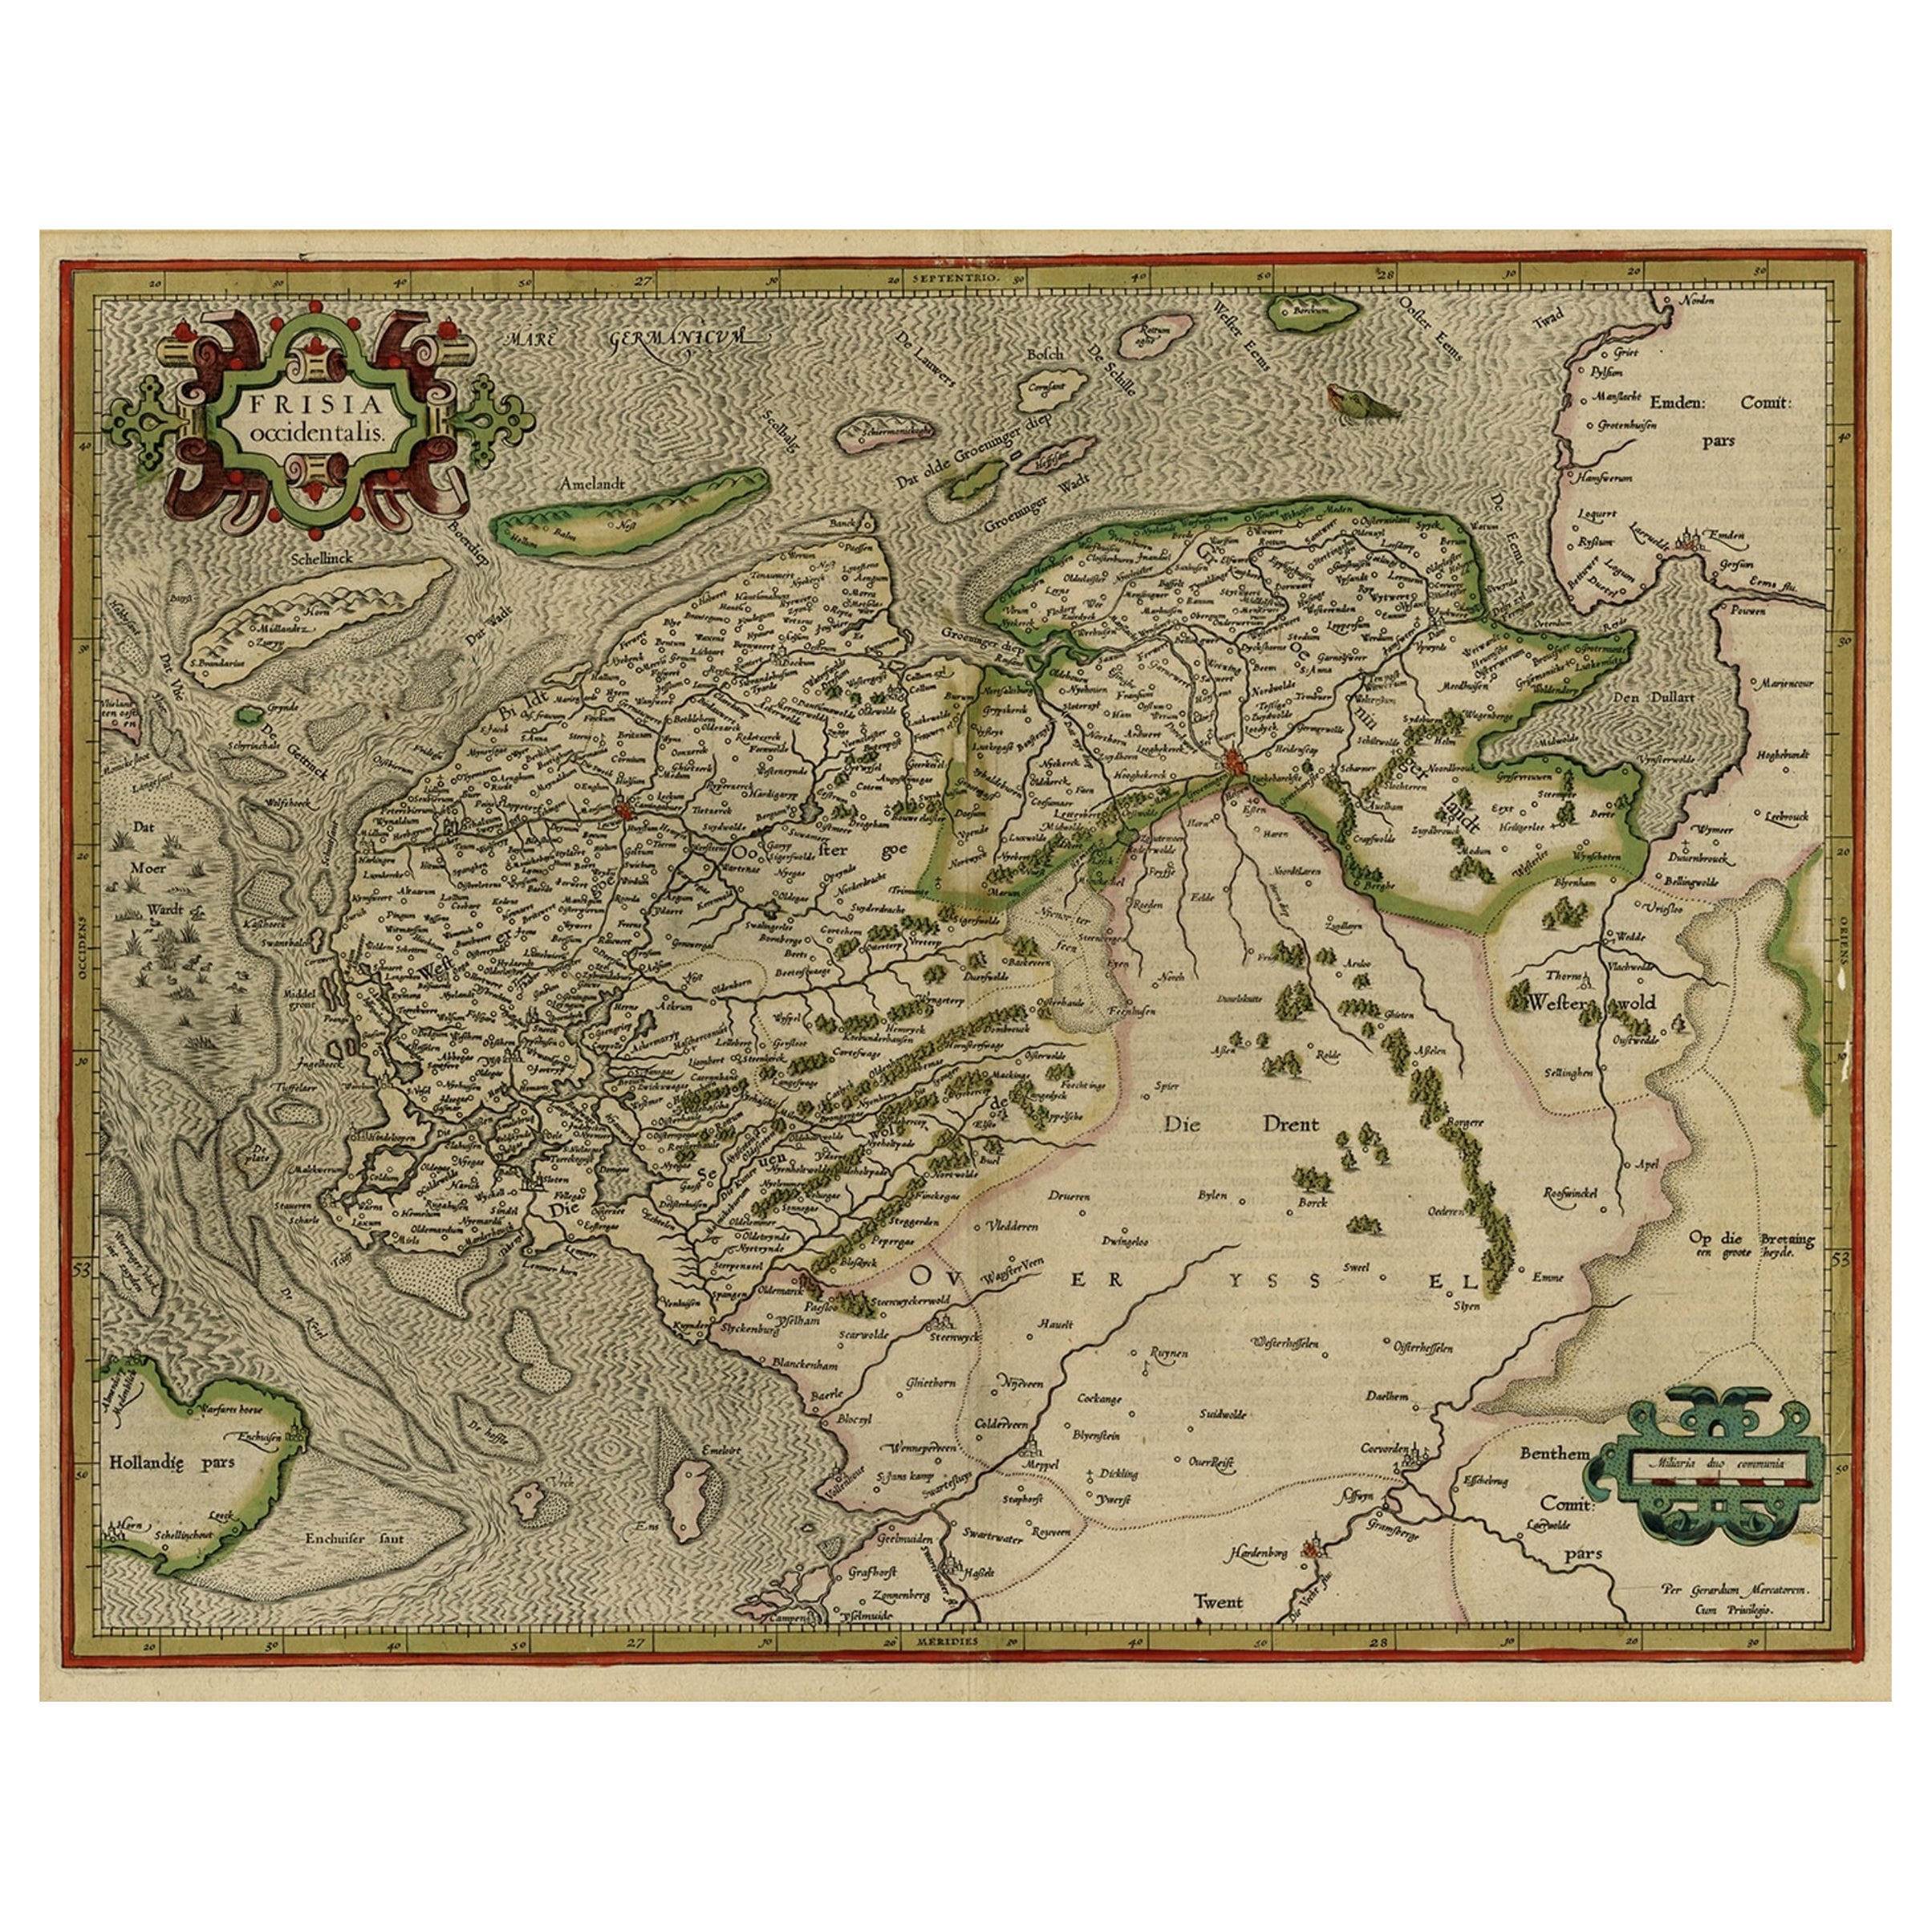 Frühe antike Karte der niederländischen Provinzen Friesland und Groningen, 1604